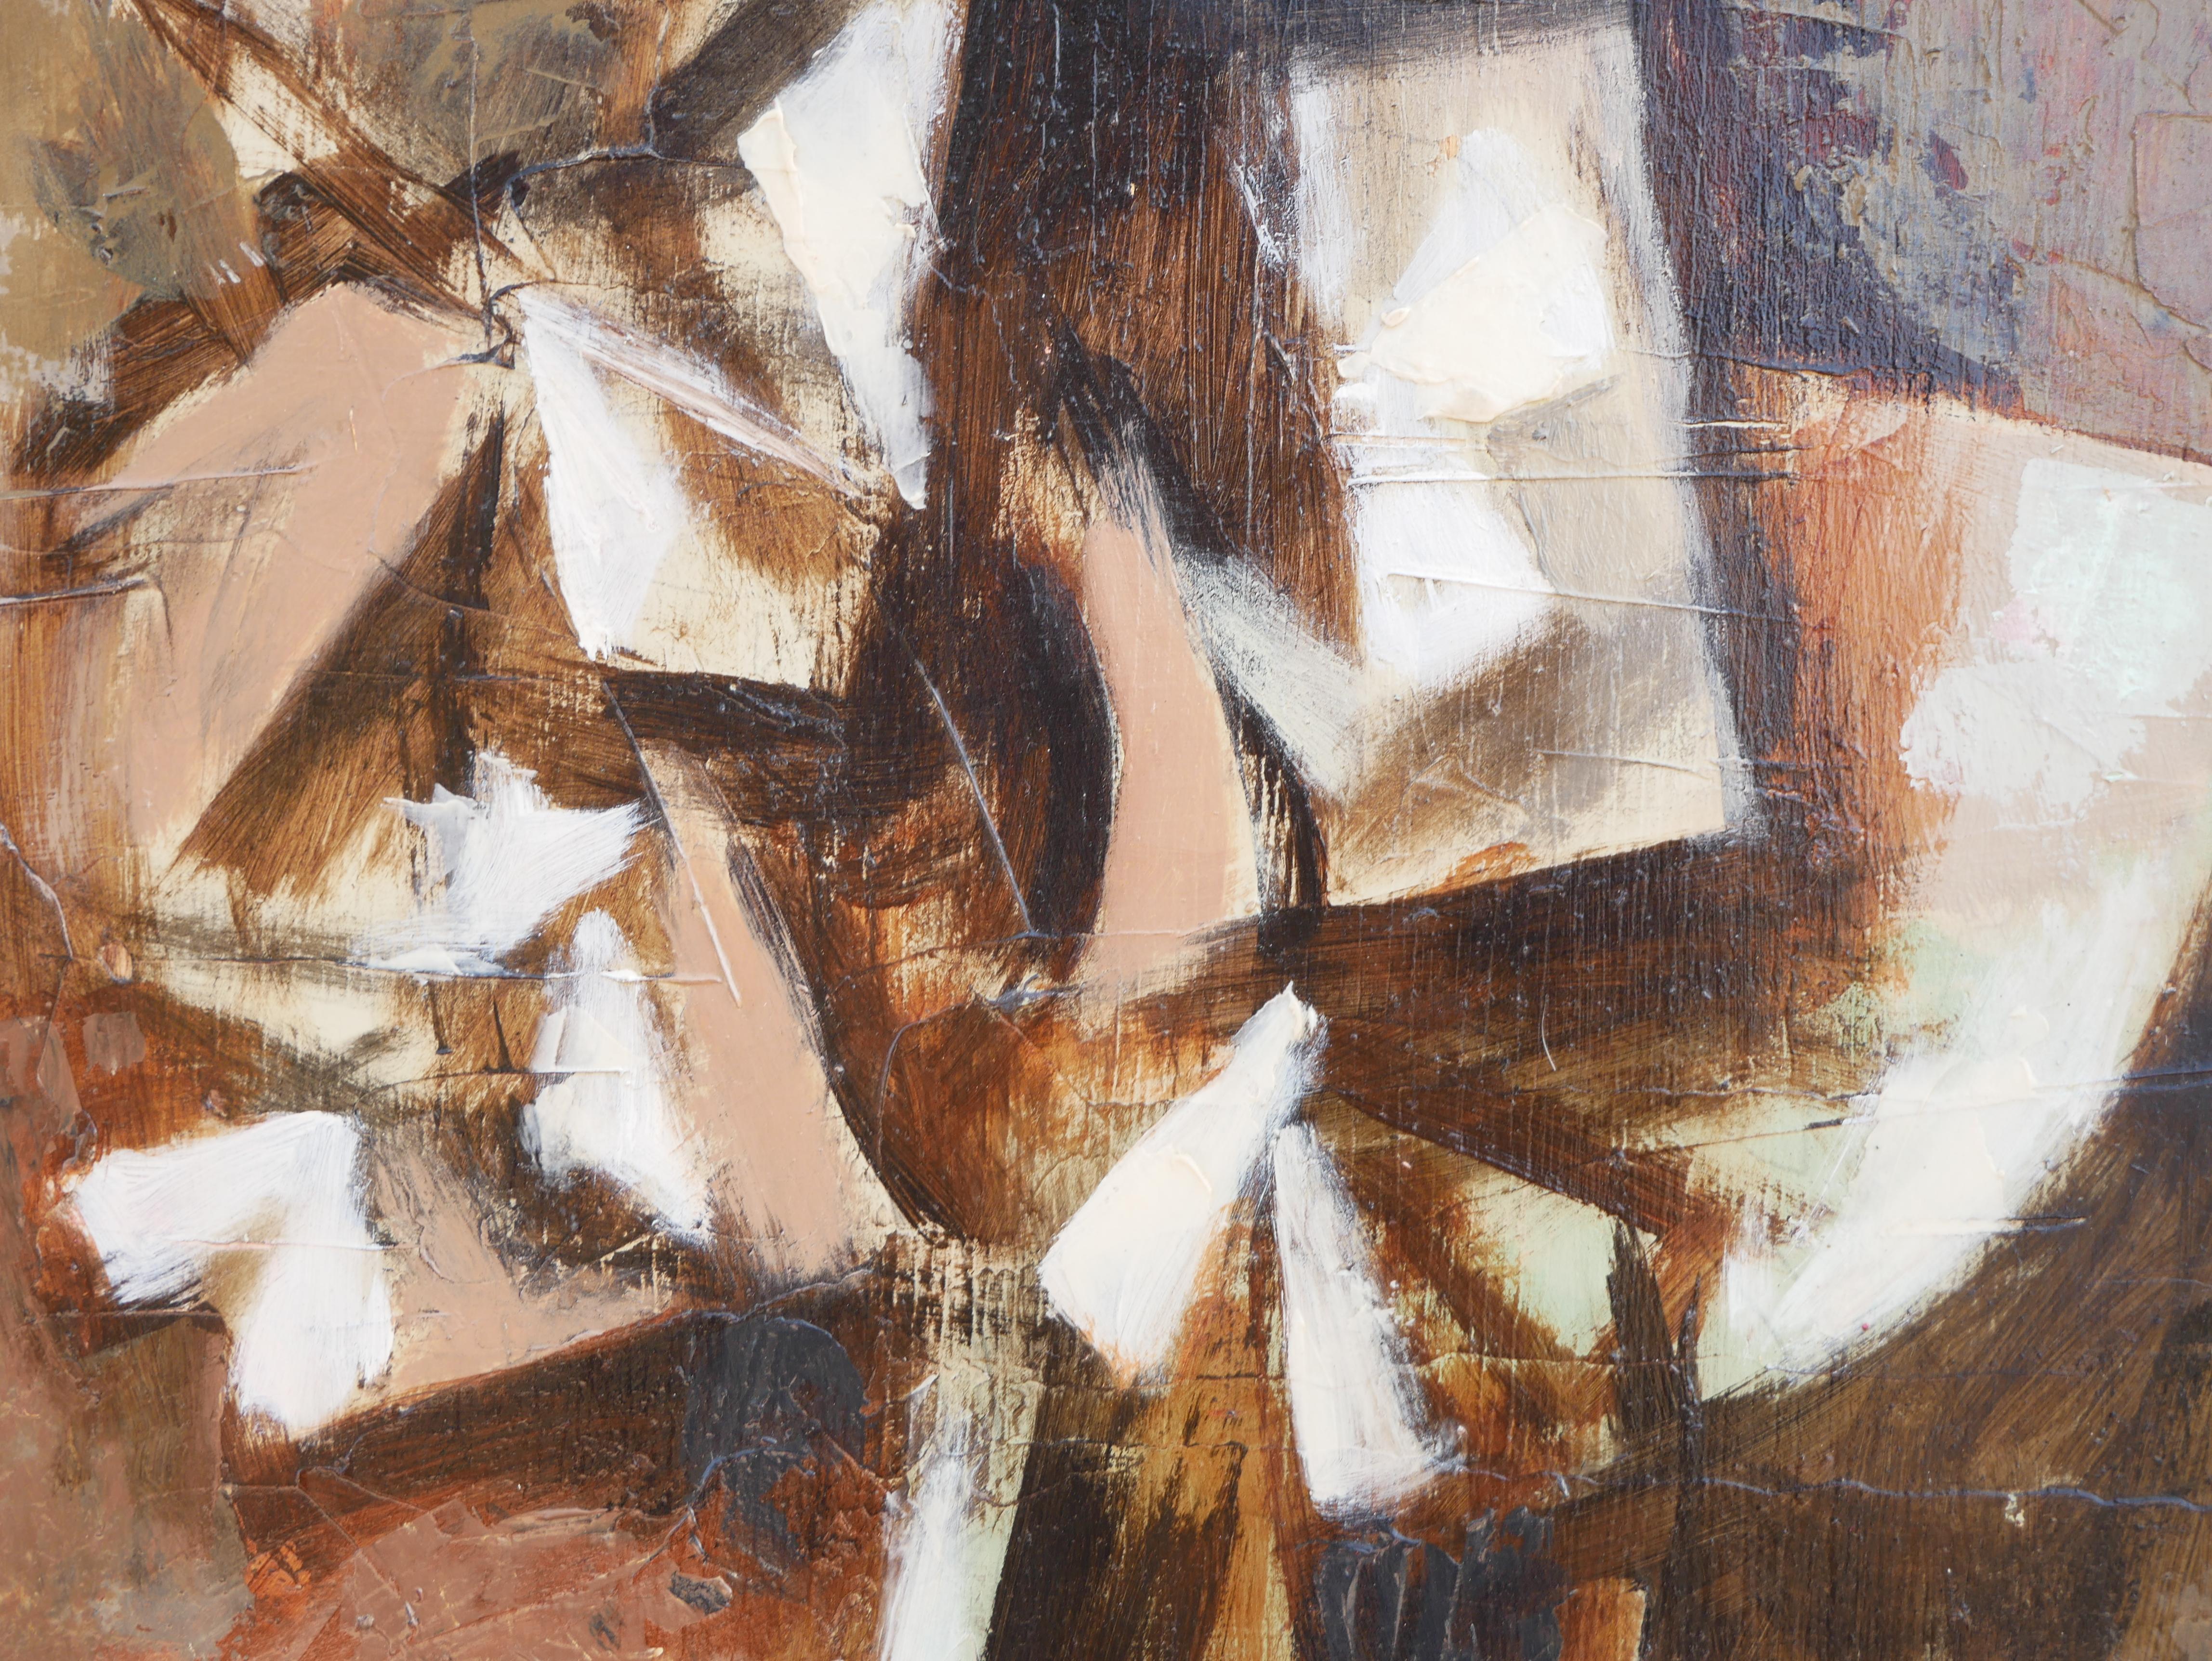 Peinture abstraite moderne de nature morte d'inspiration cubiste aux tons bruns, réalisée par l'artiste David Adickes de Houston, Texas. L'œuvre présente un arrangement floral central sur un fond brun clair. Signé par l'artiste dans le coin